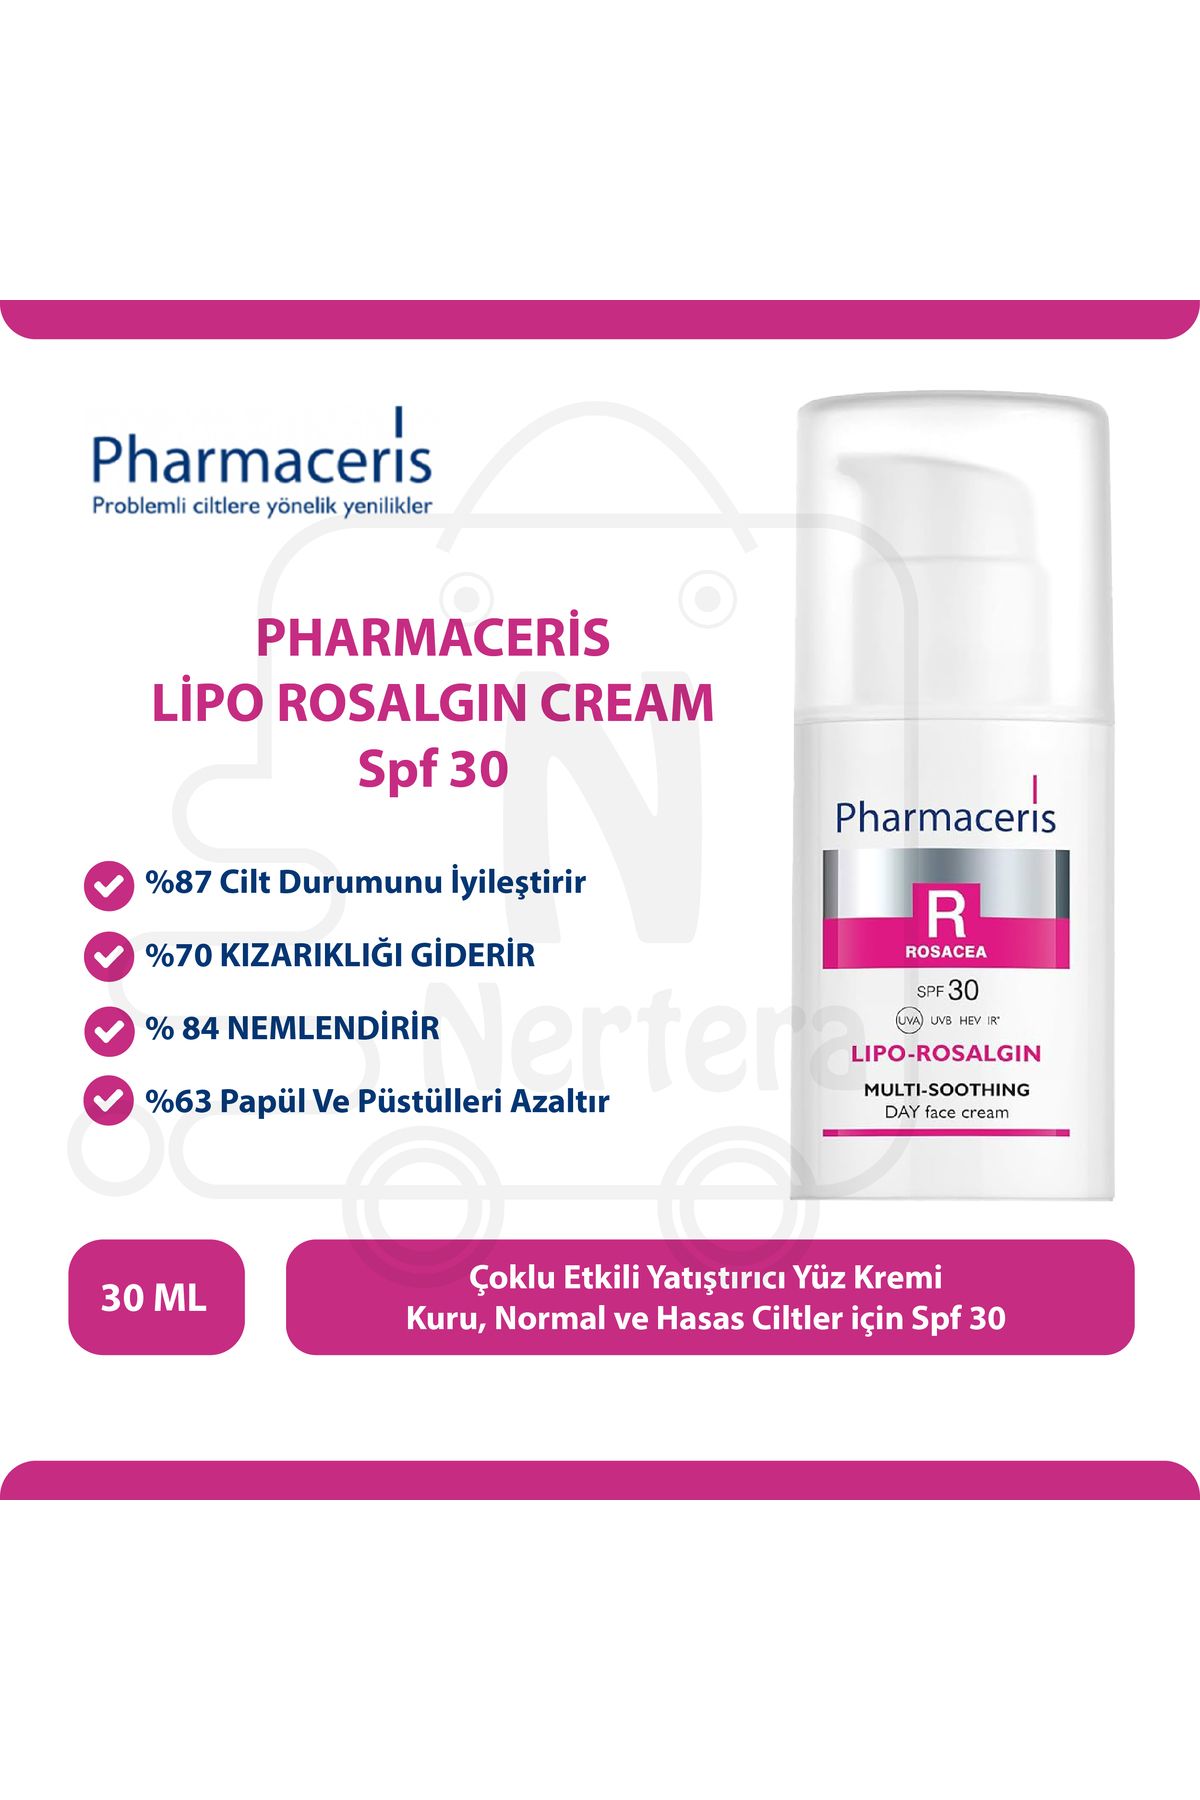 Pharmaceris Lipo Rosalgin Cream For Dry Skin 30 ml Kuru Ciltler Için Yatıştırıcı Krem Spf30